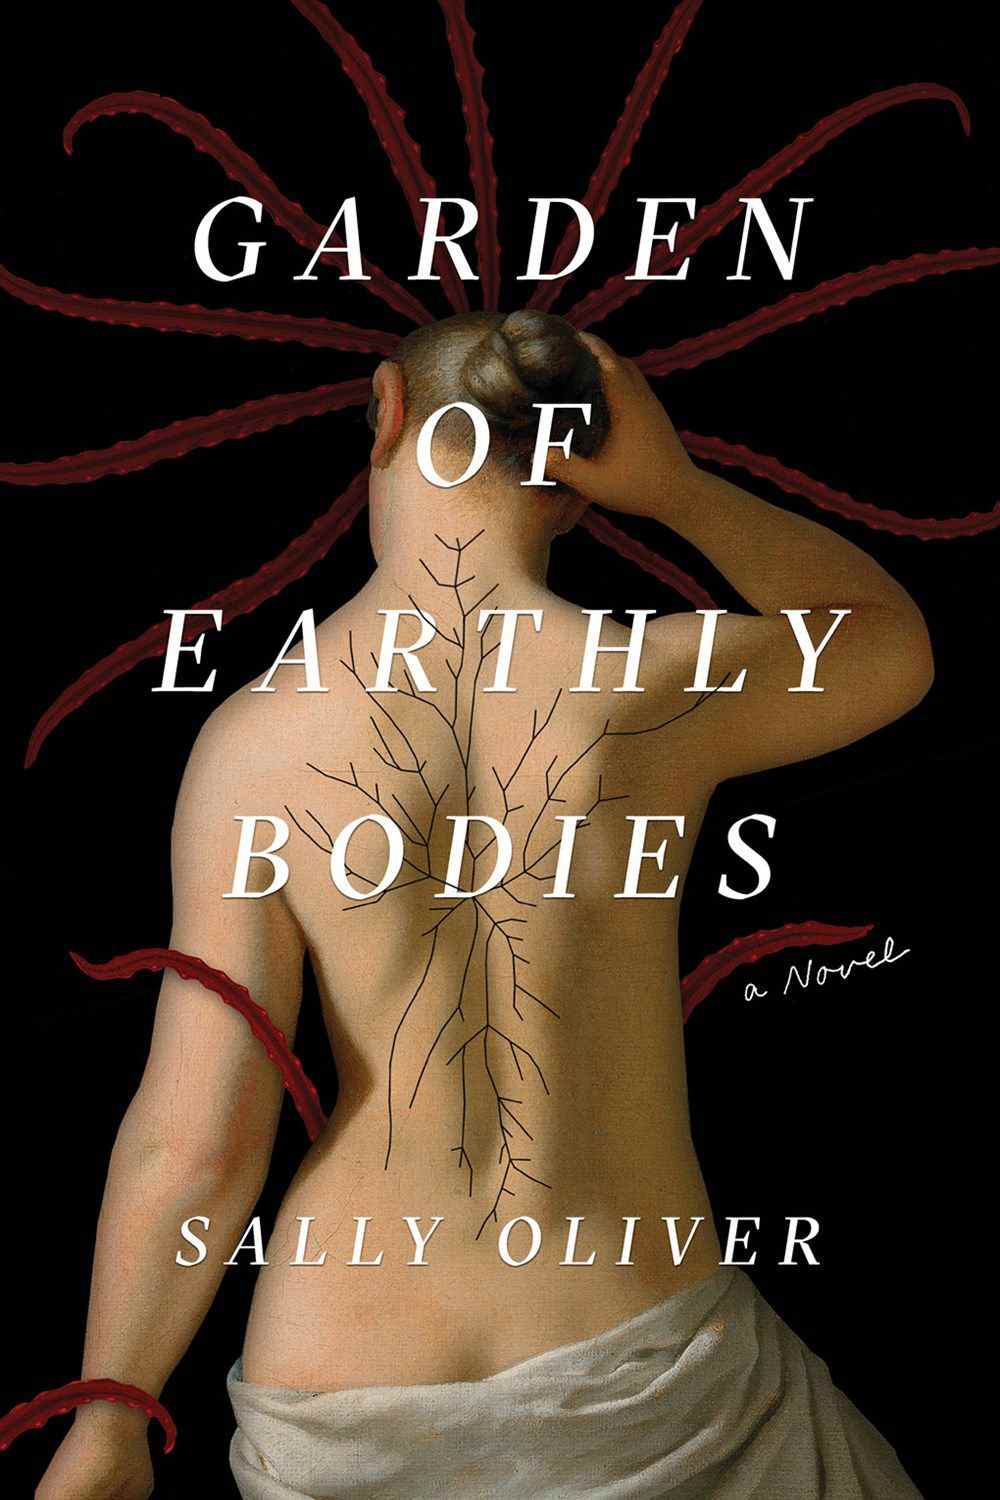 Image de couverture pour Garden of Earthly Bodies de Sally Oliver, mettant en scène une femme avec le dos exposé et des cheveux poussant le long de sa colonne vertébrale.  Aussi, potentiellement des tentacules !